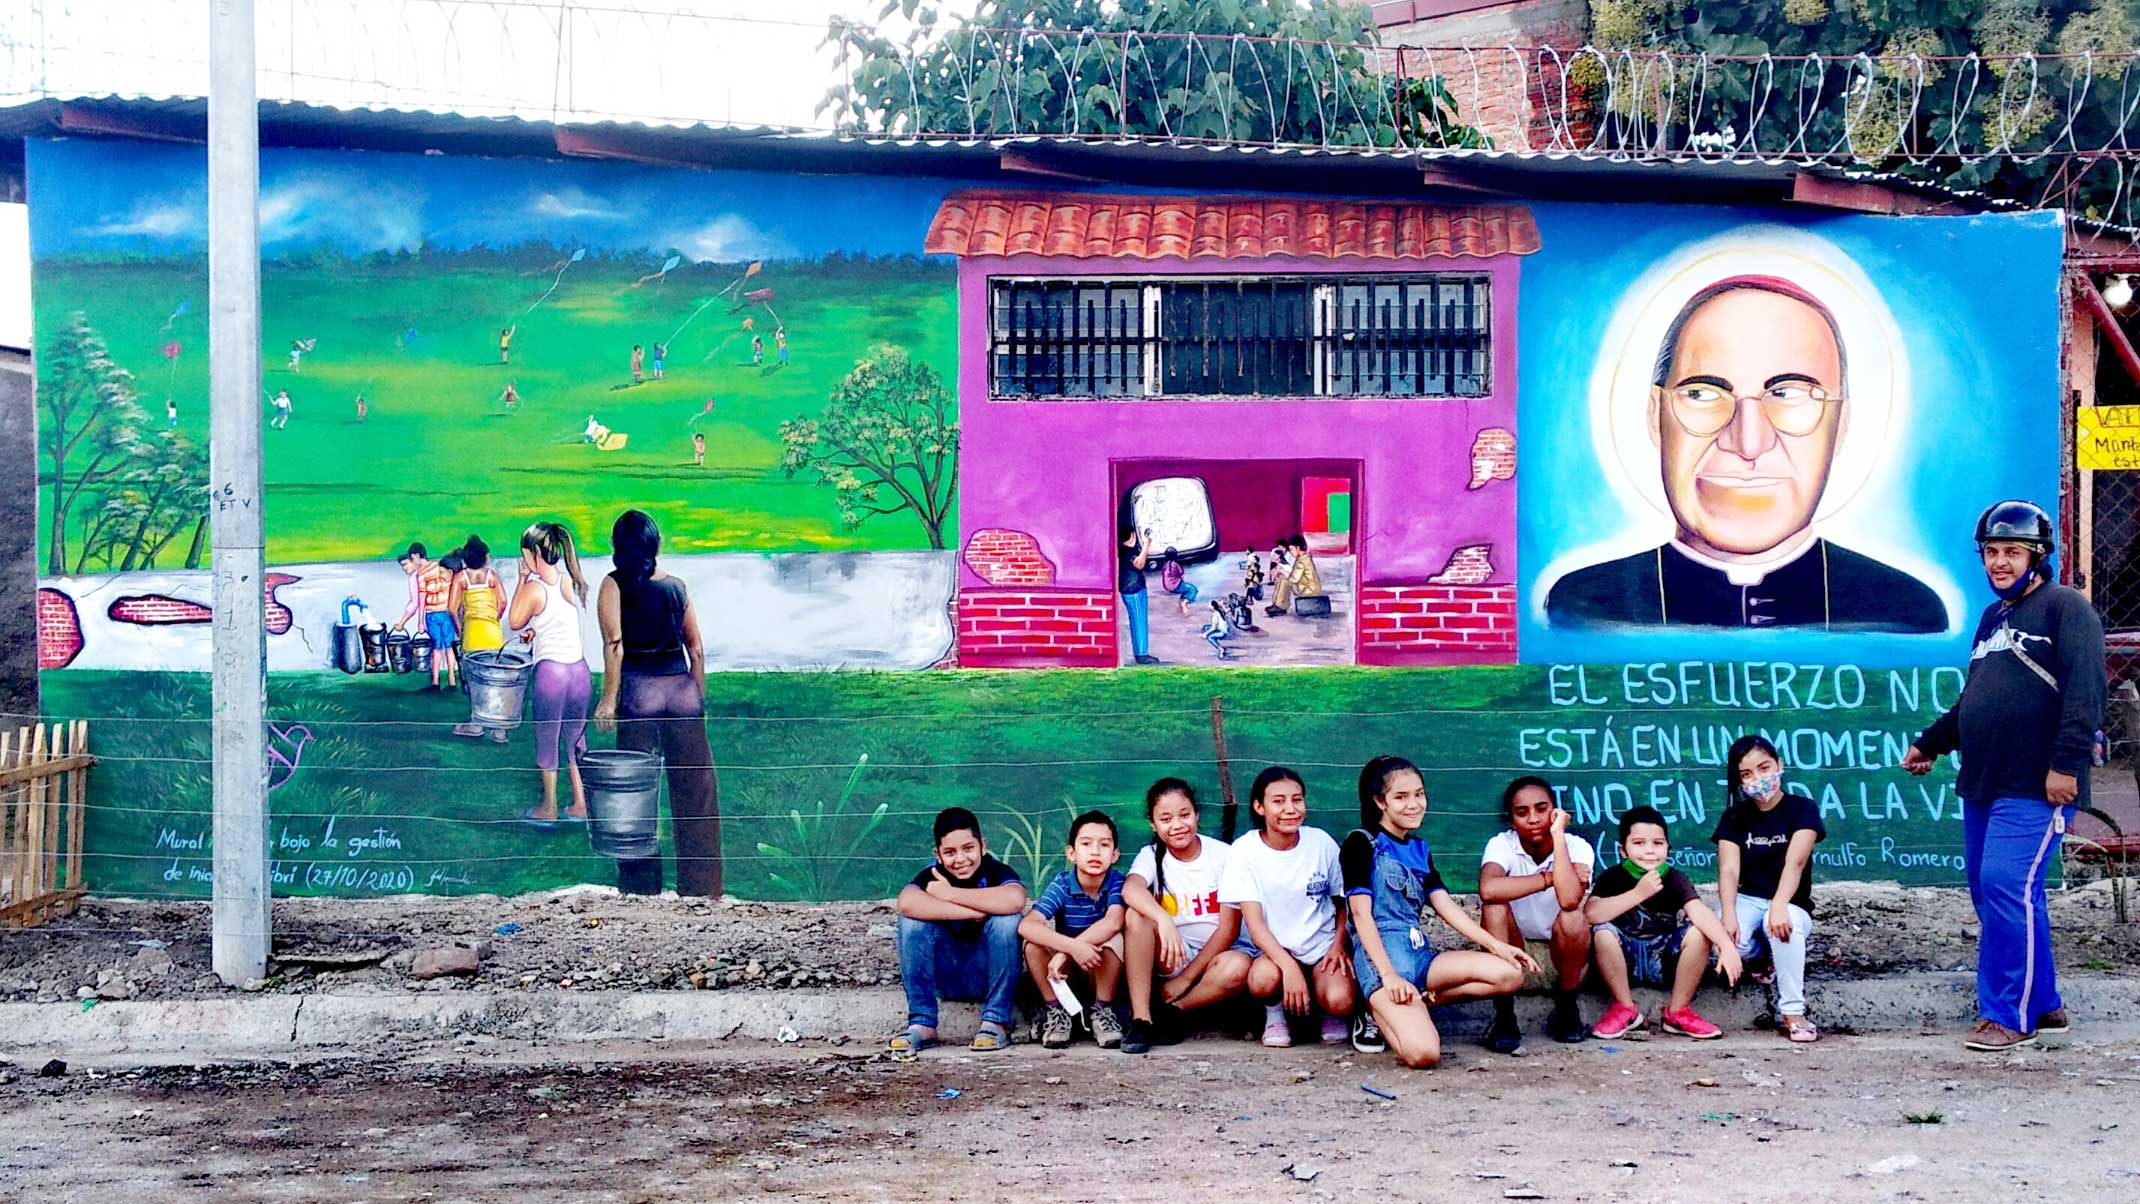 Wandbilder, welche die schwierigen Lebensbedingungen im Viertel aufzeichnen